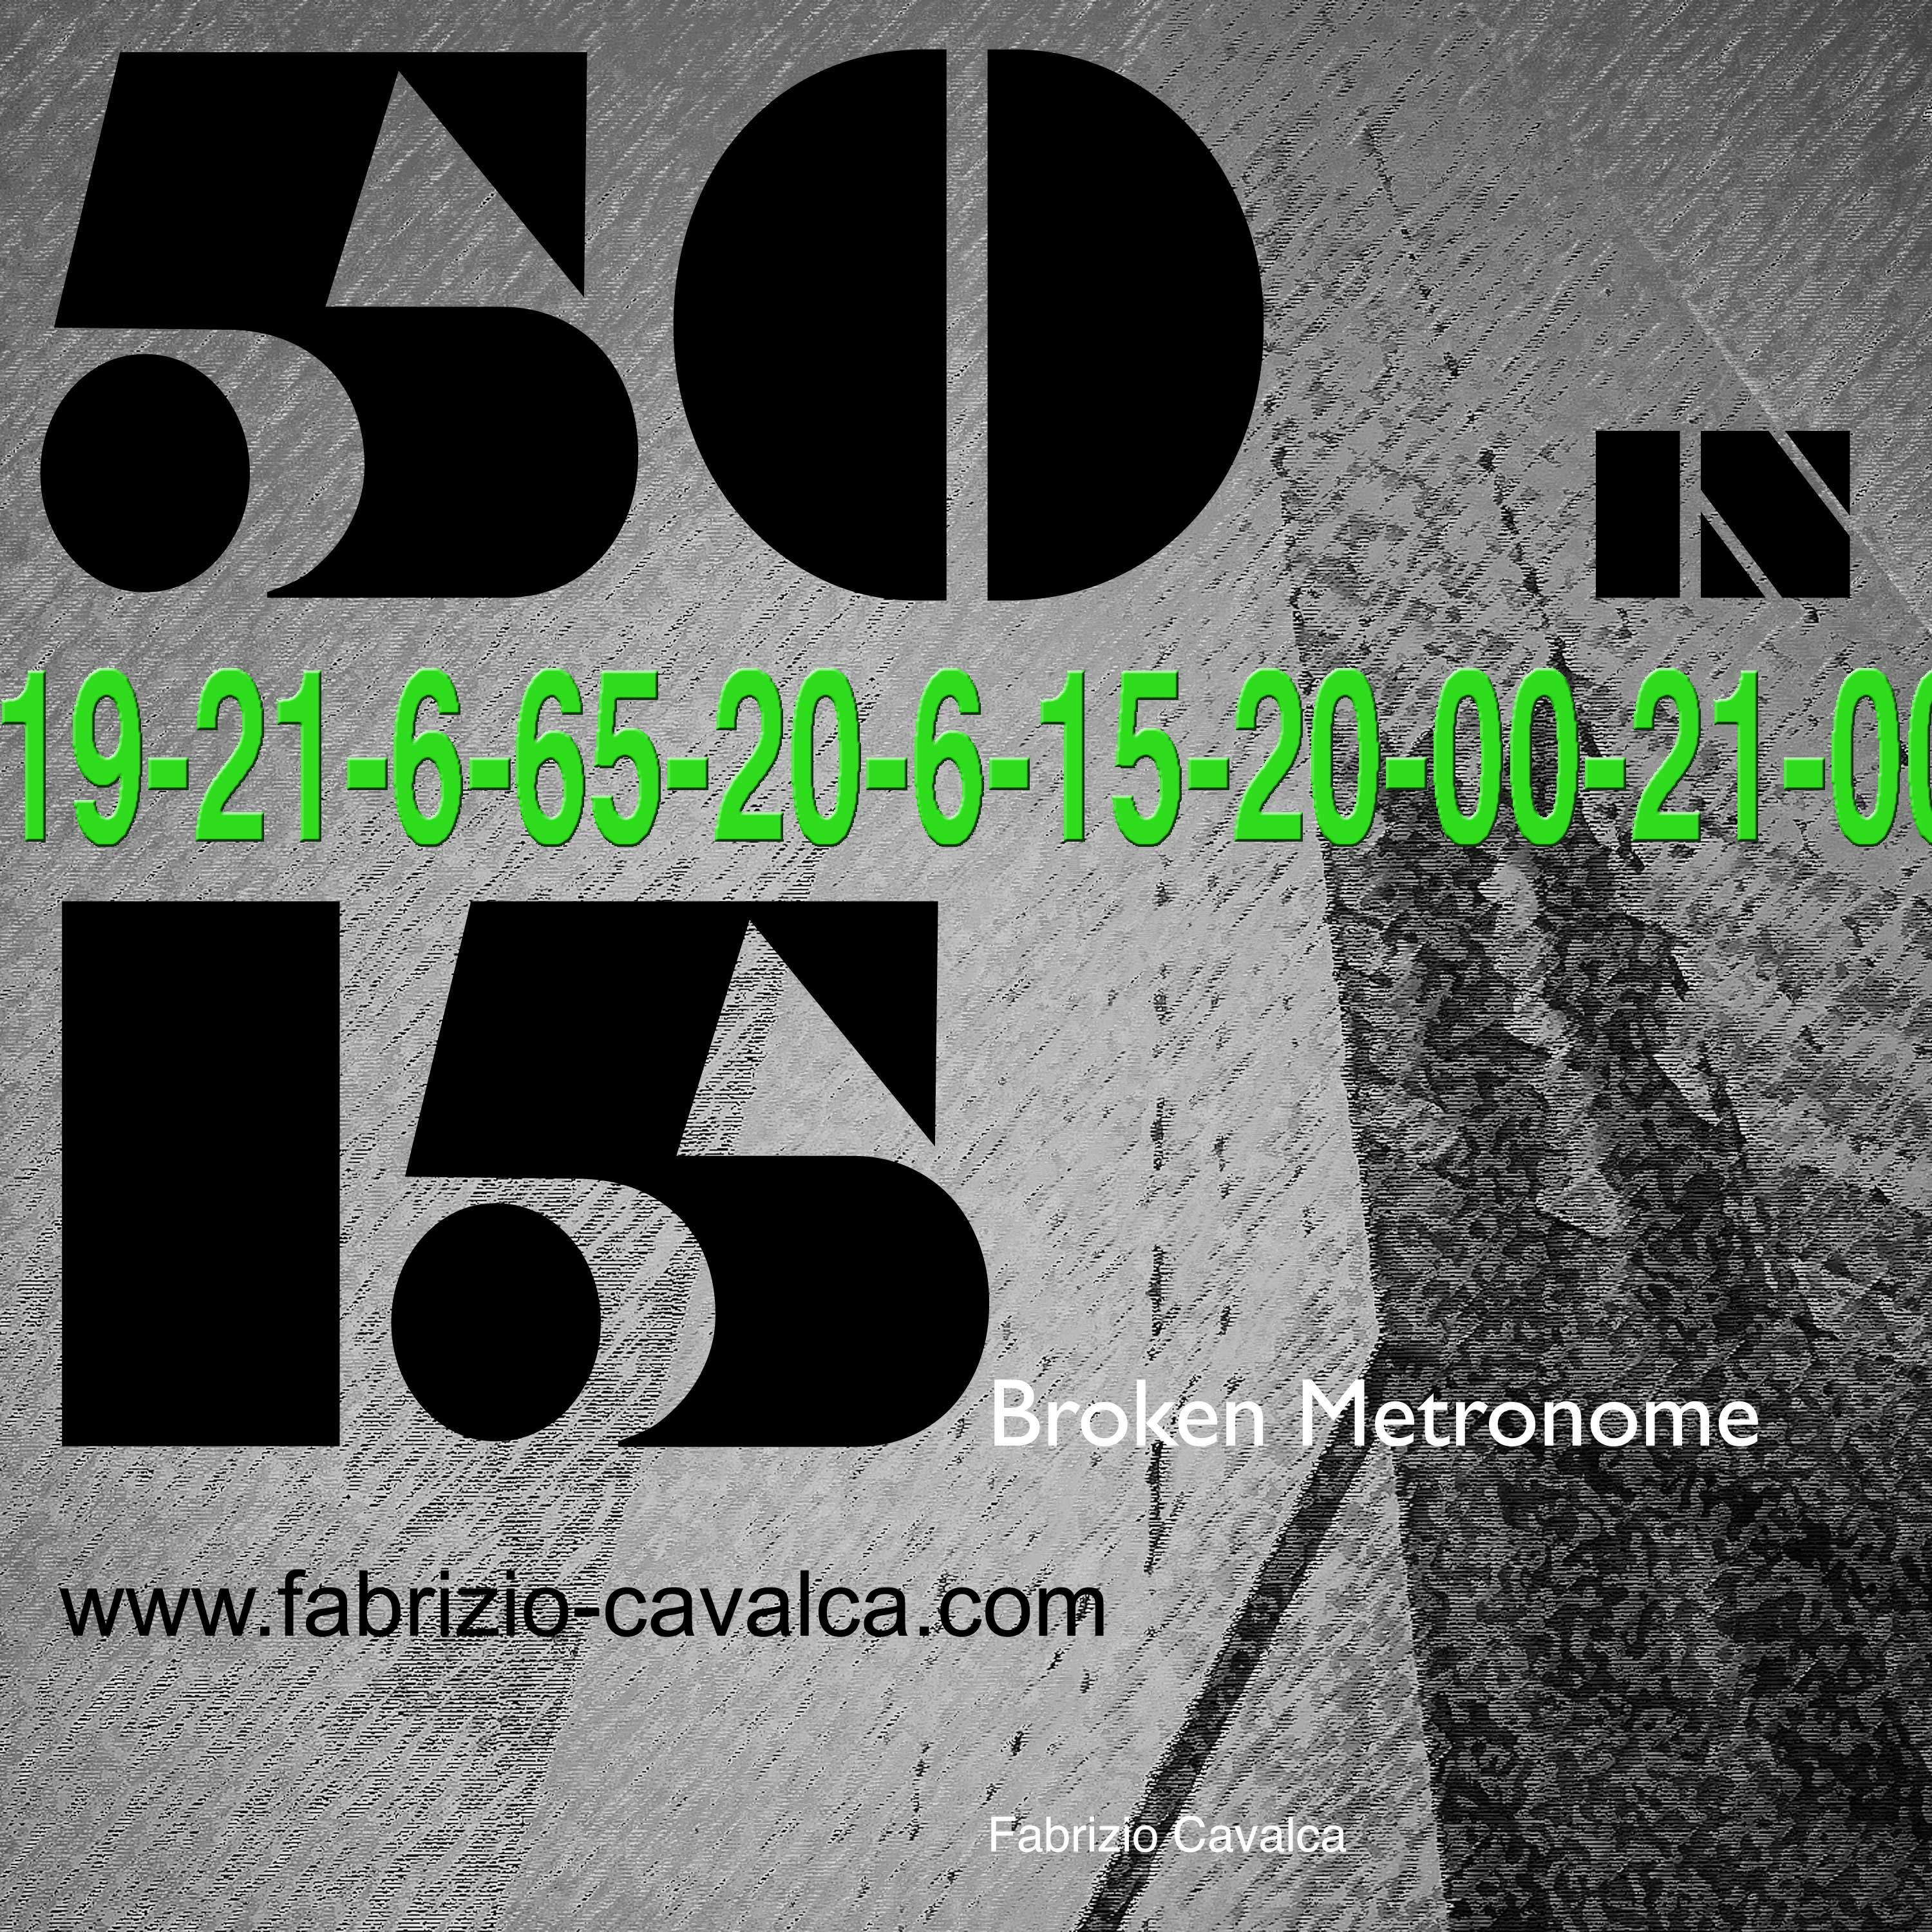 50in15 Broken Metronome